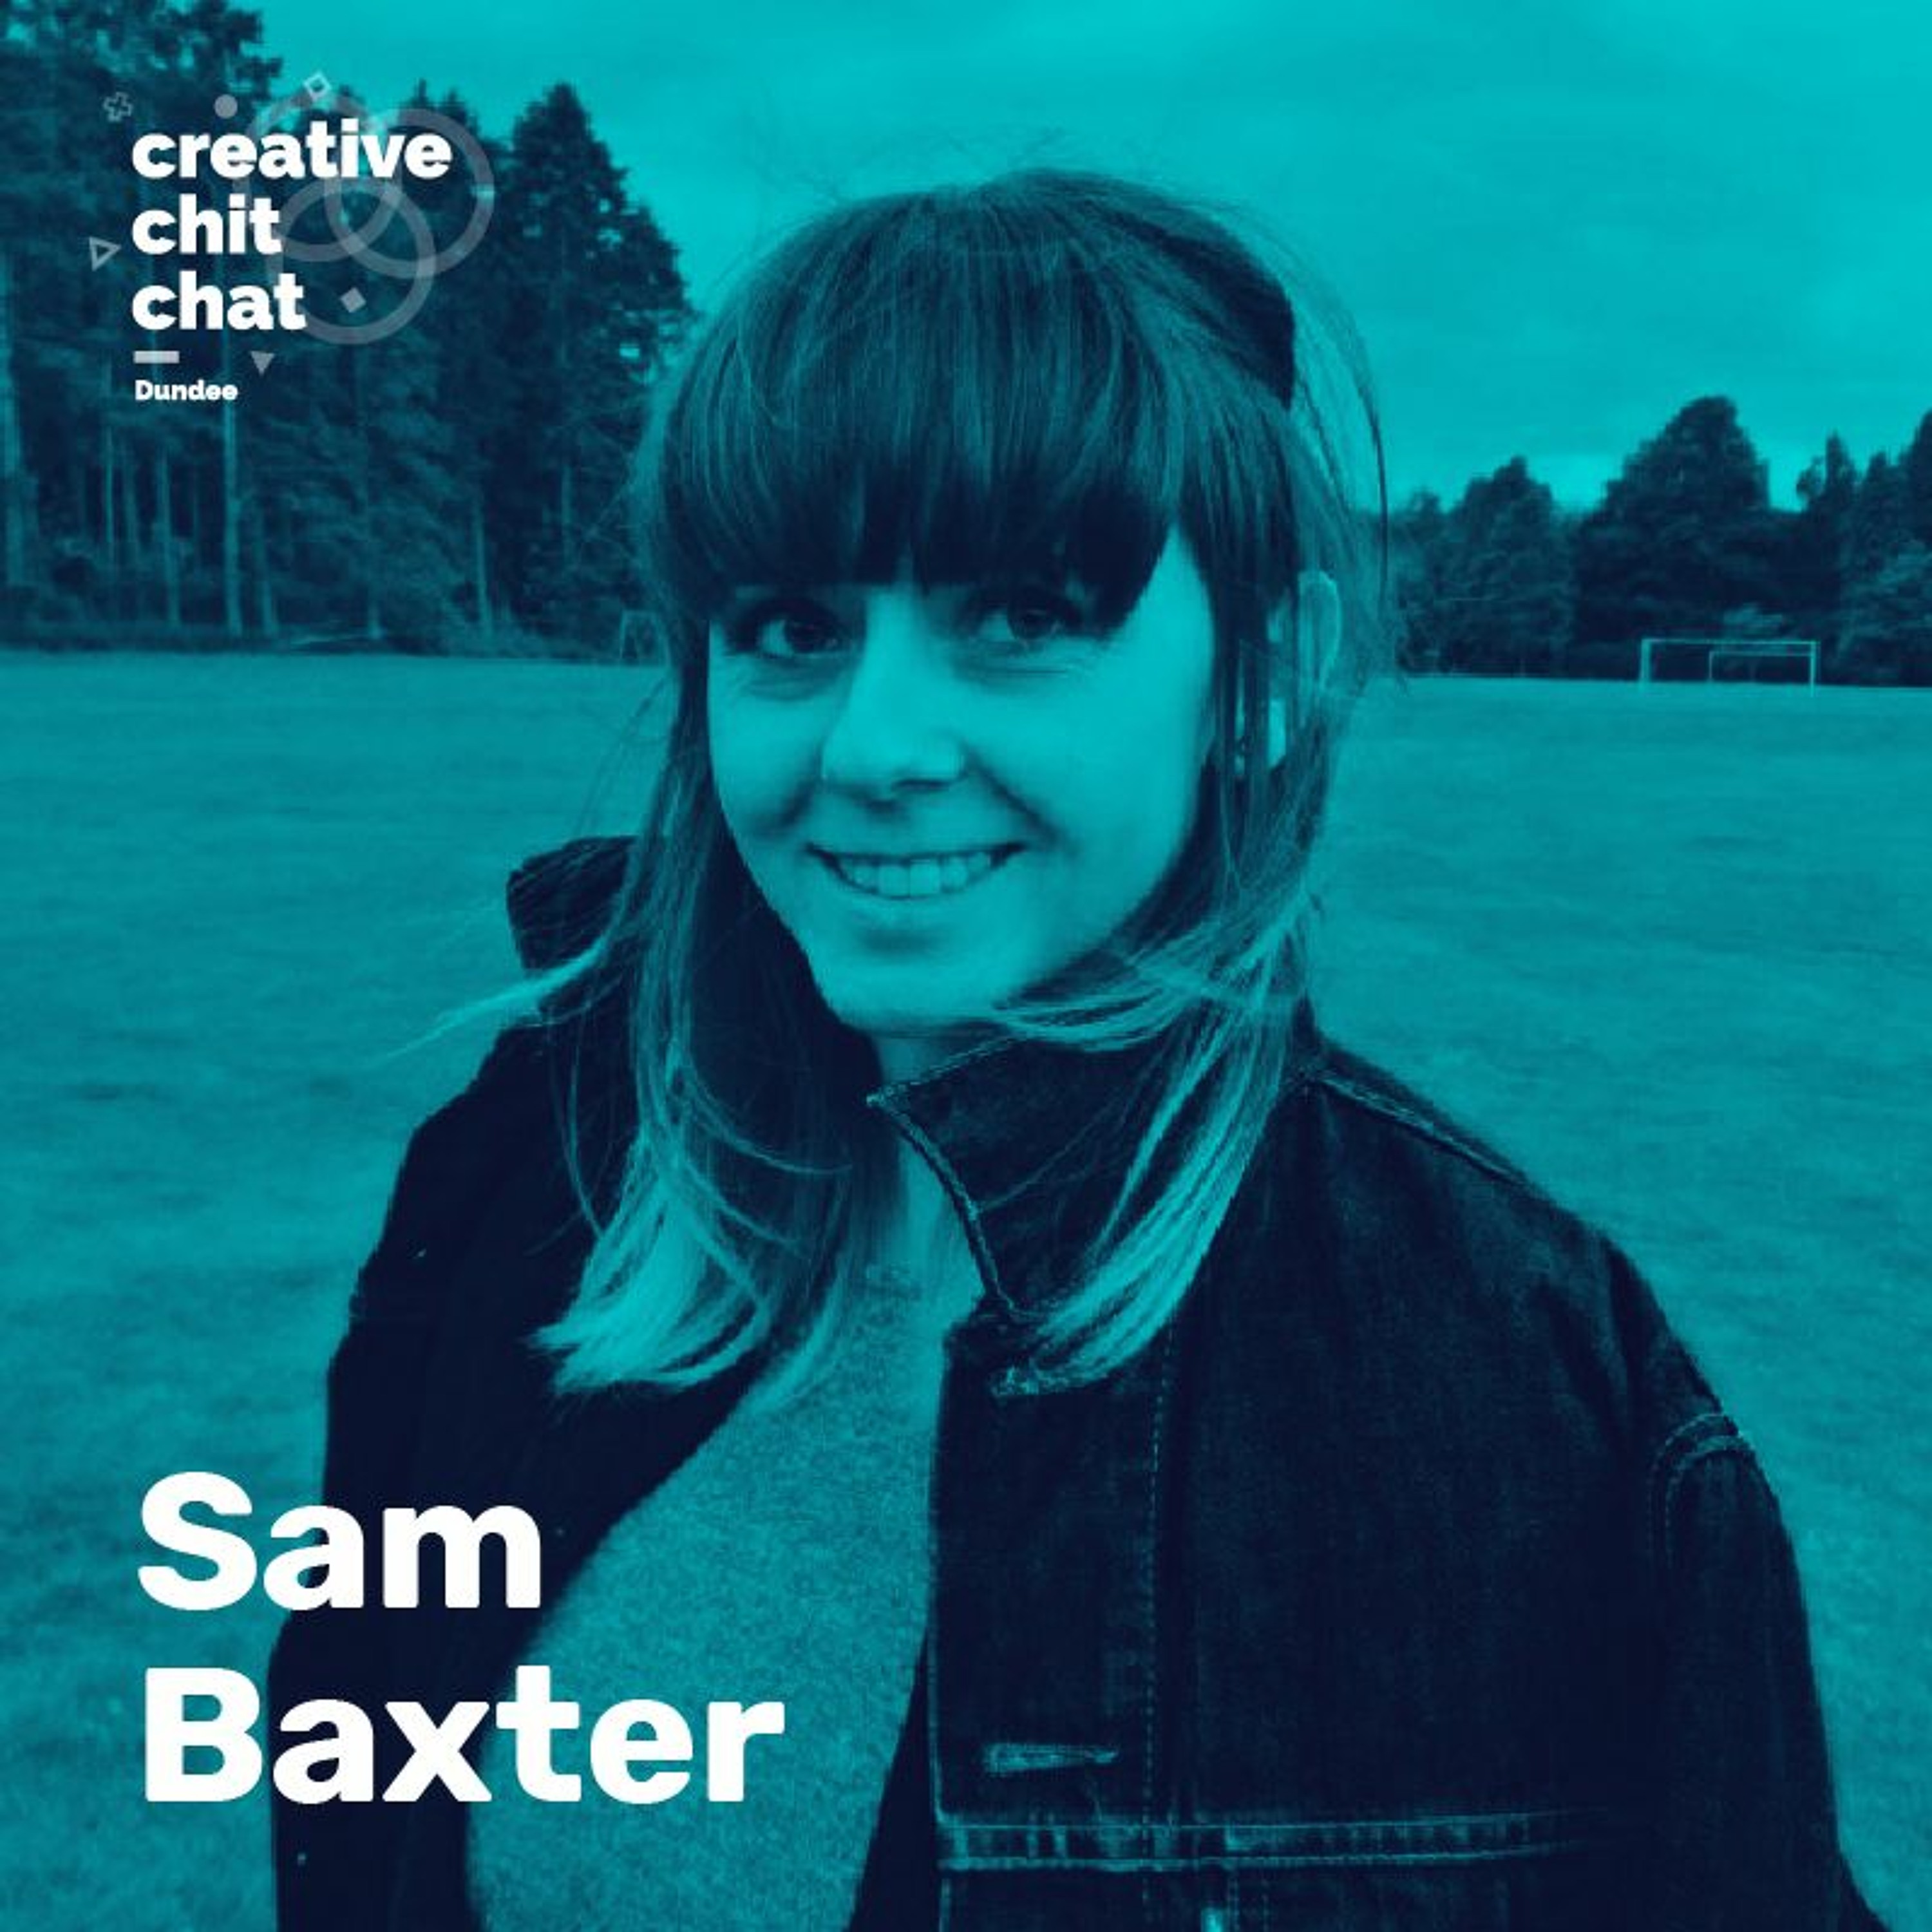 Sam Baxter - Fun a day Dundee